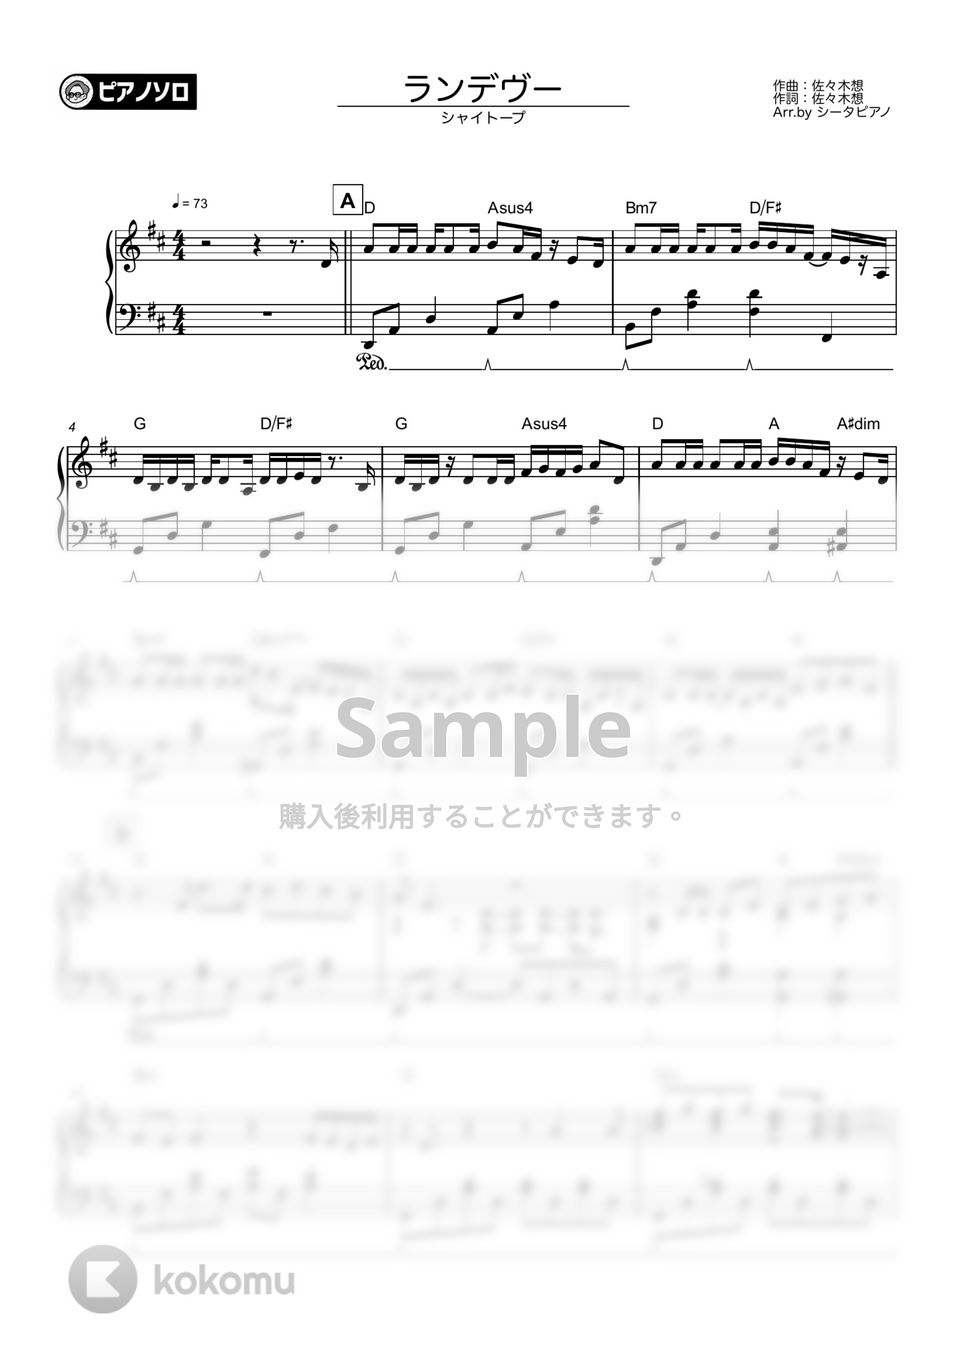 シャイトープ - ランデヴー by シータピアノ